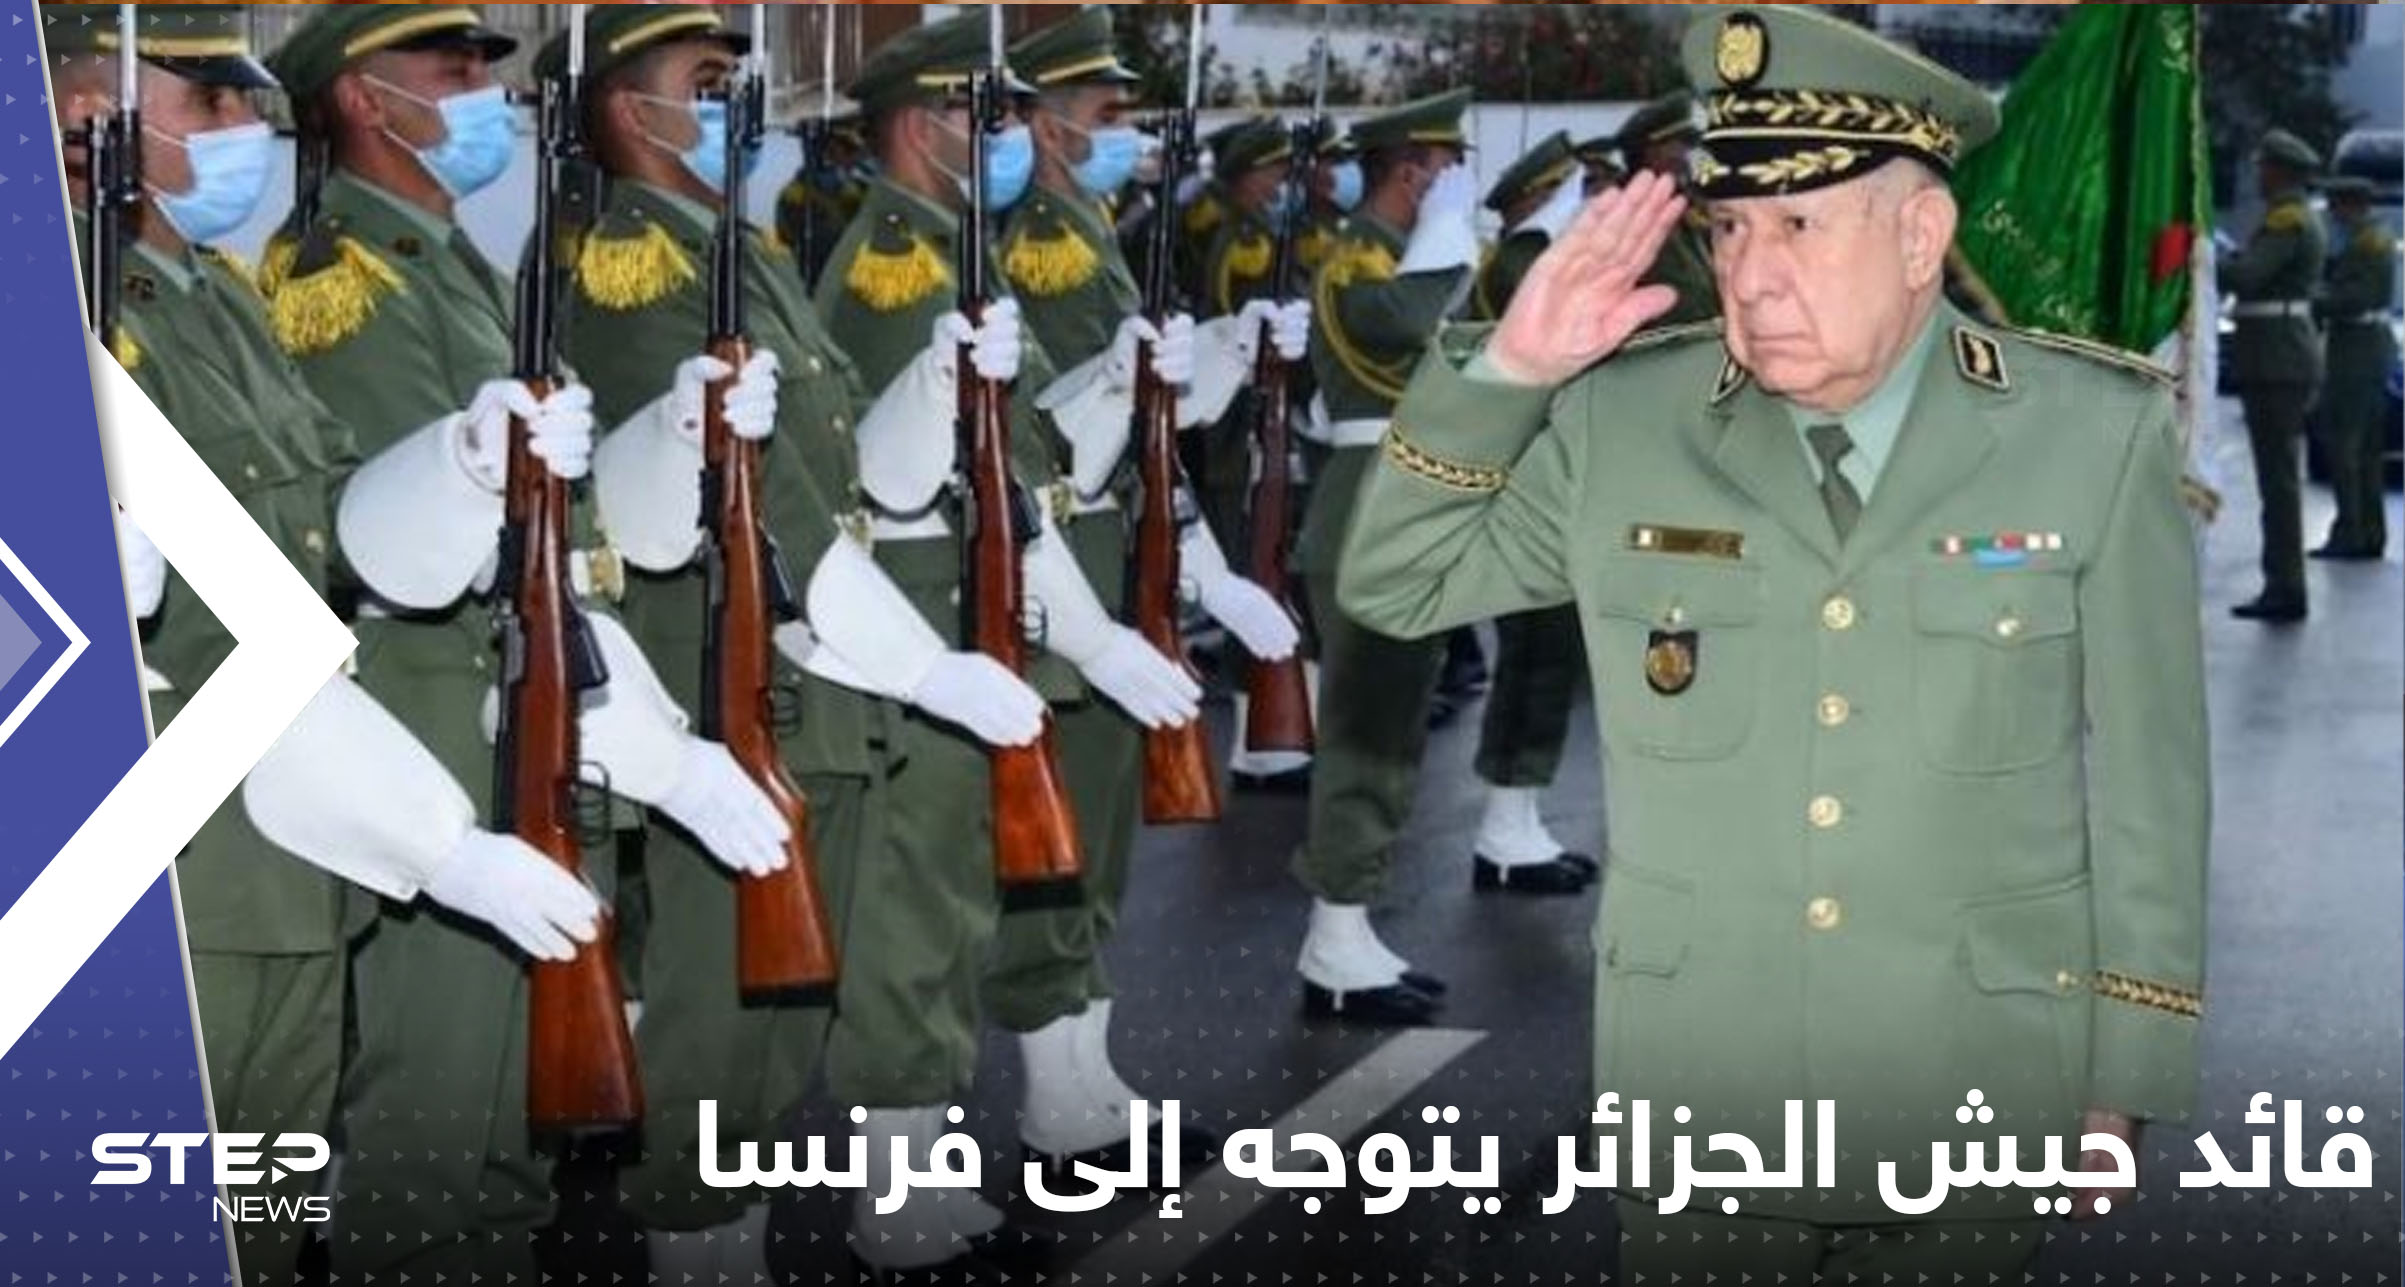 قائد جيش الجزائر يتوجه إلى فرنسا بزيارة هي الأولى منذ 17 عاماً.. فما السر؟